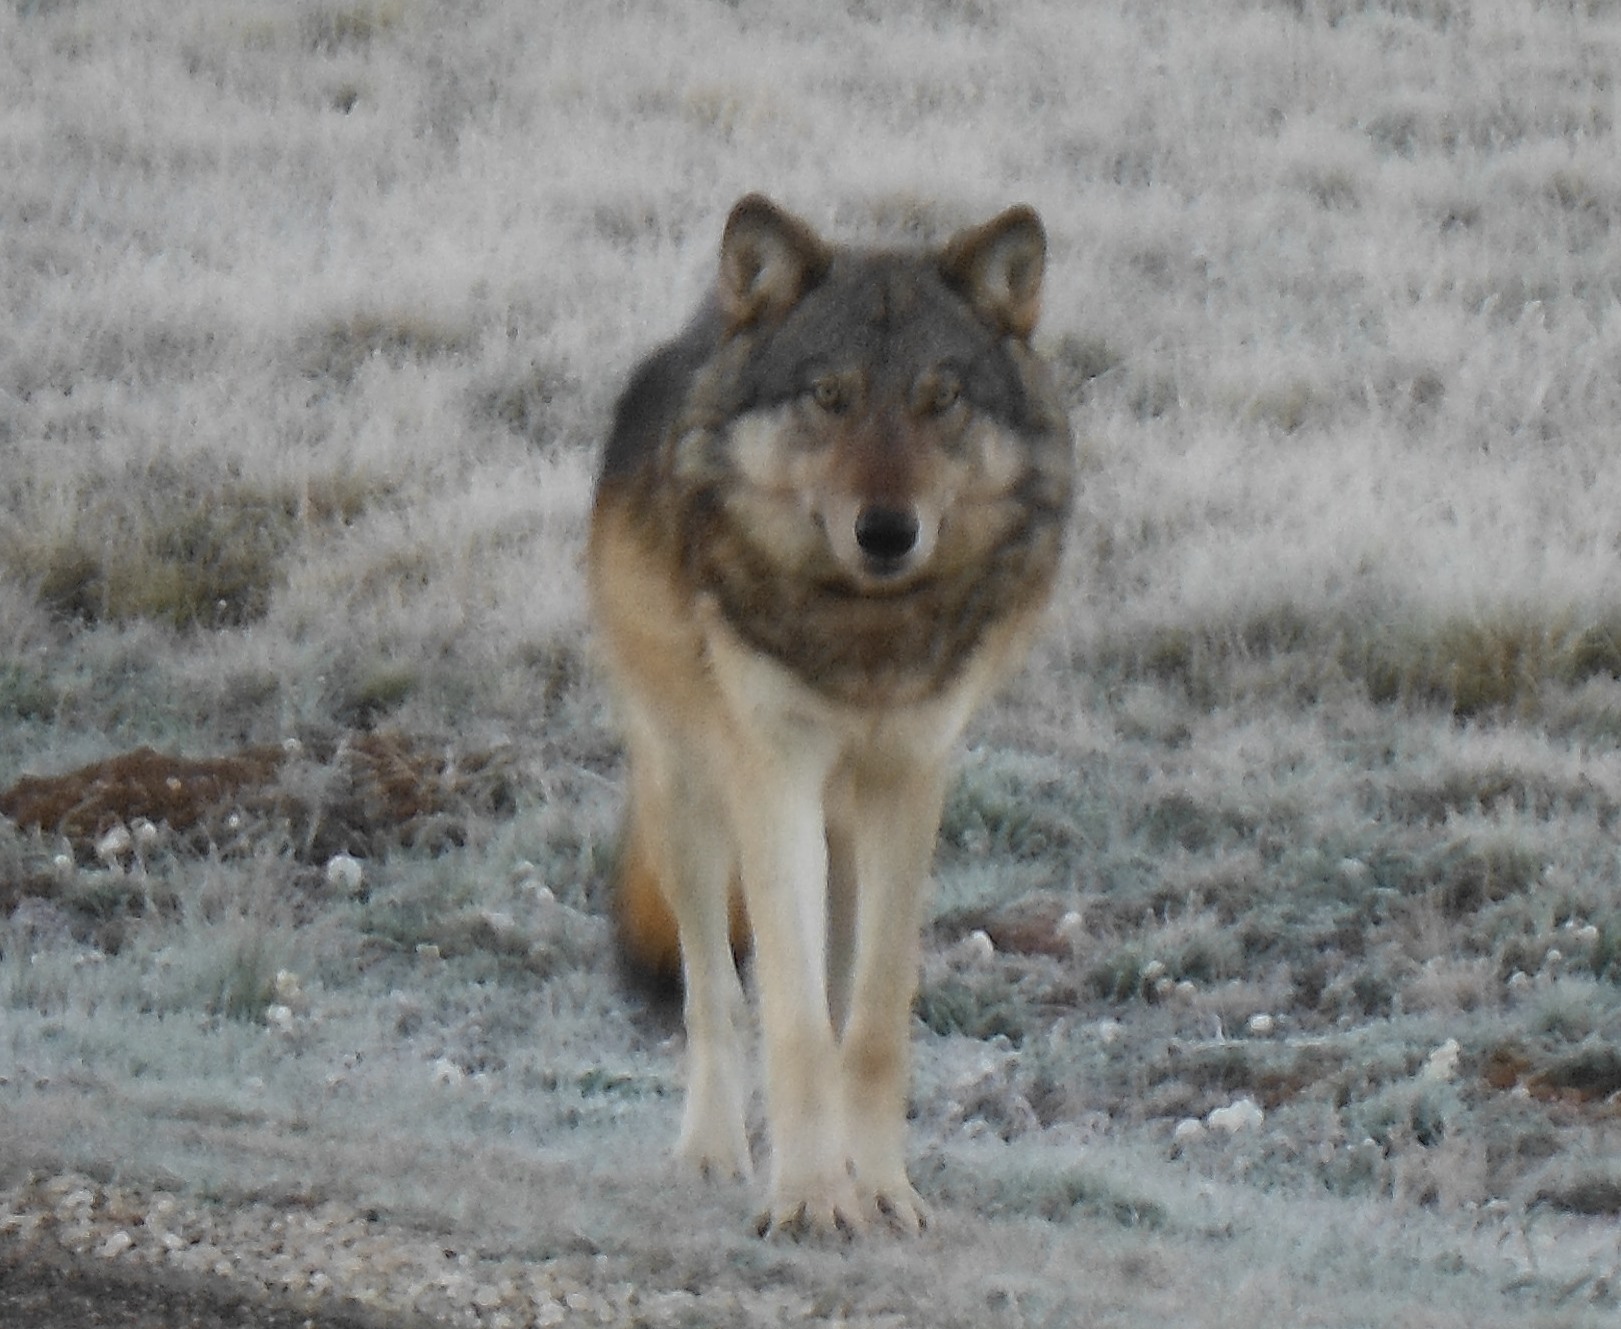 North Rim Wolf-NPS via Crumbo